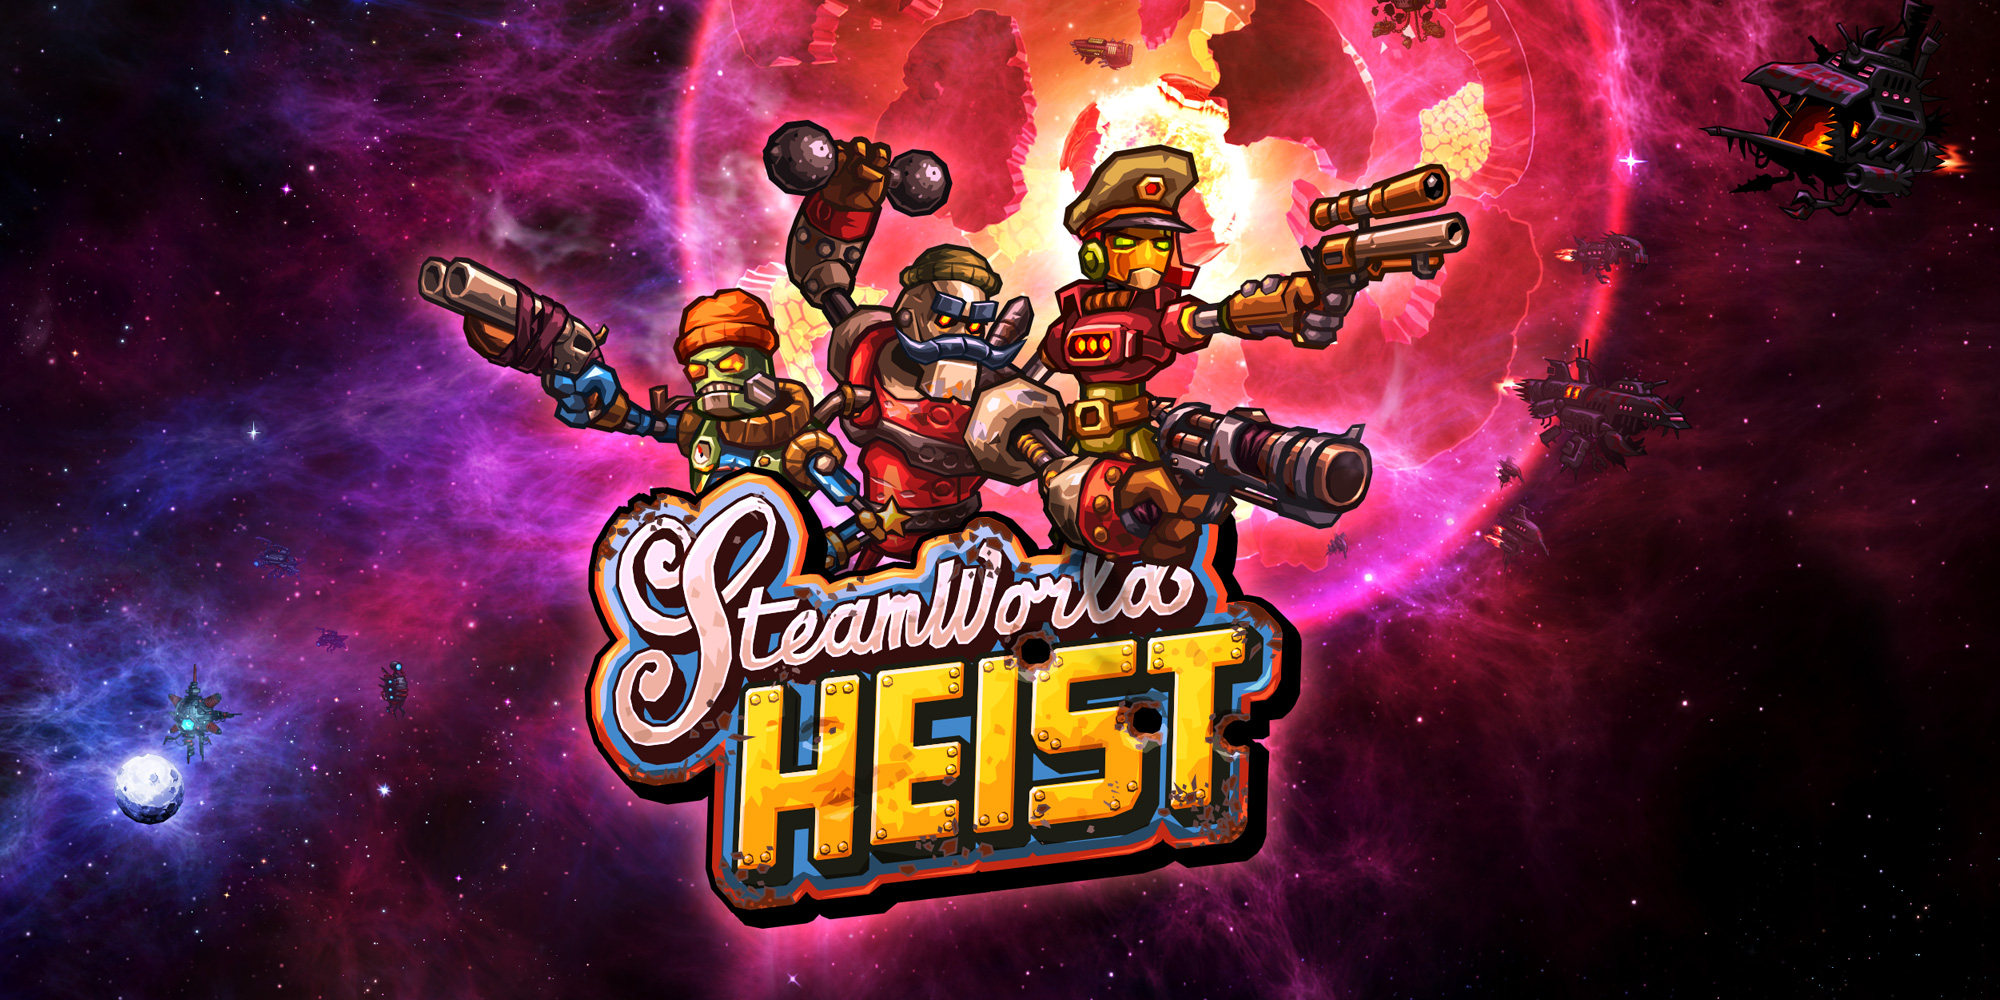 steamworld heist 2